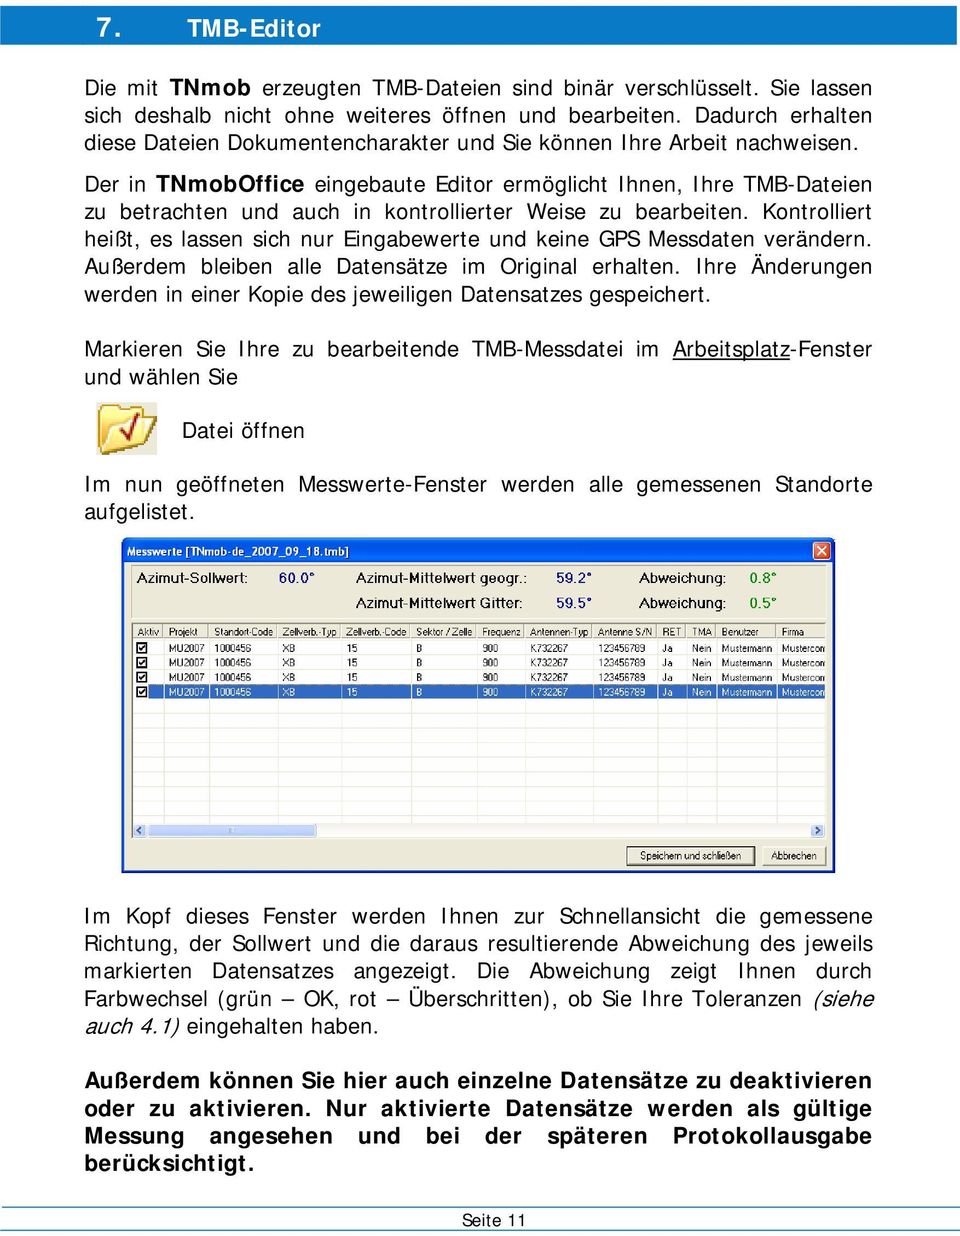 Der in TNmobOffice eingebaute Editor ermöglicht Ihnen, Ihre TMB-Dateien zu betrachten und auch in kontrollierter Weise zu bearbeiten.